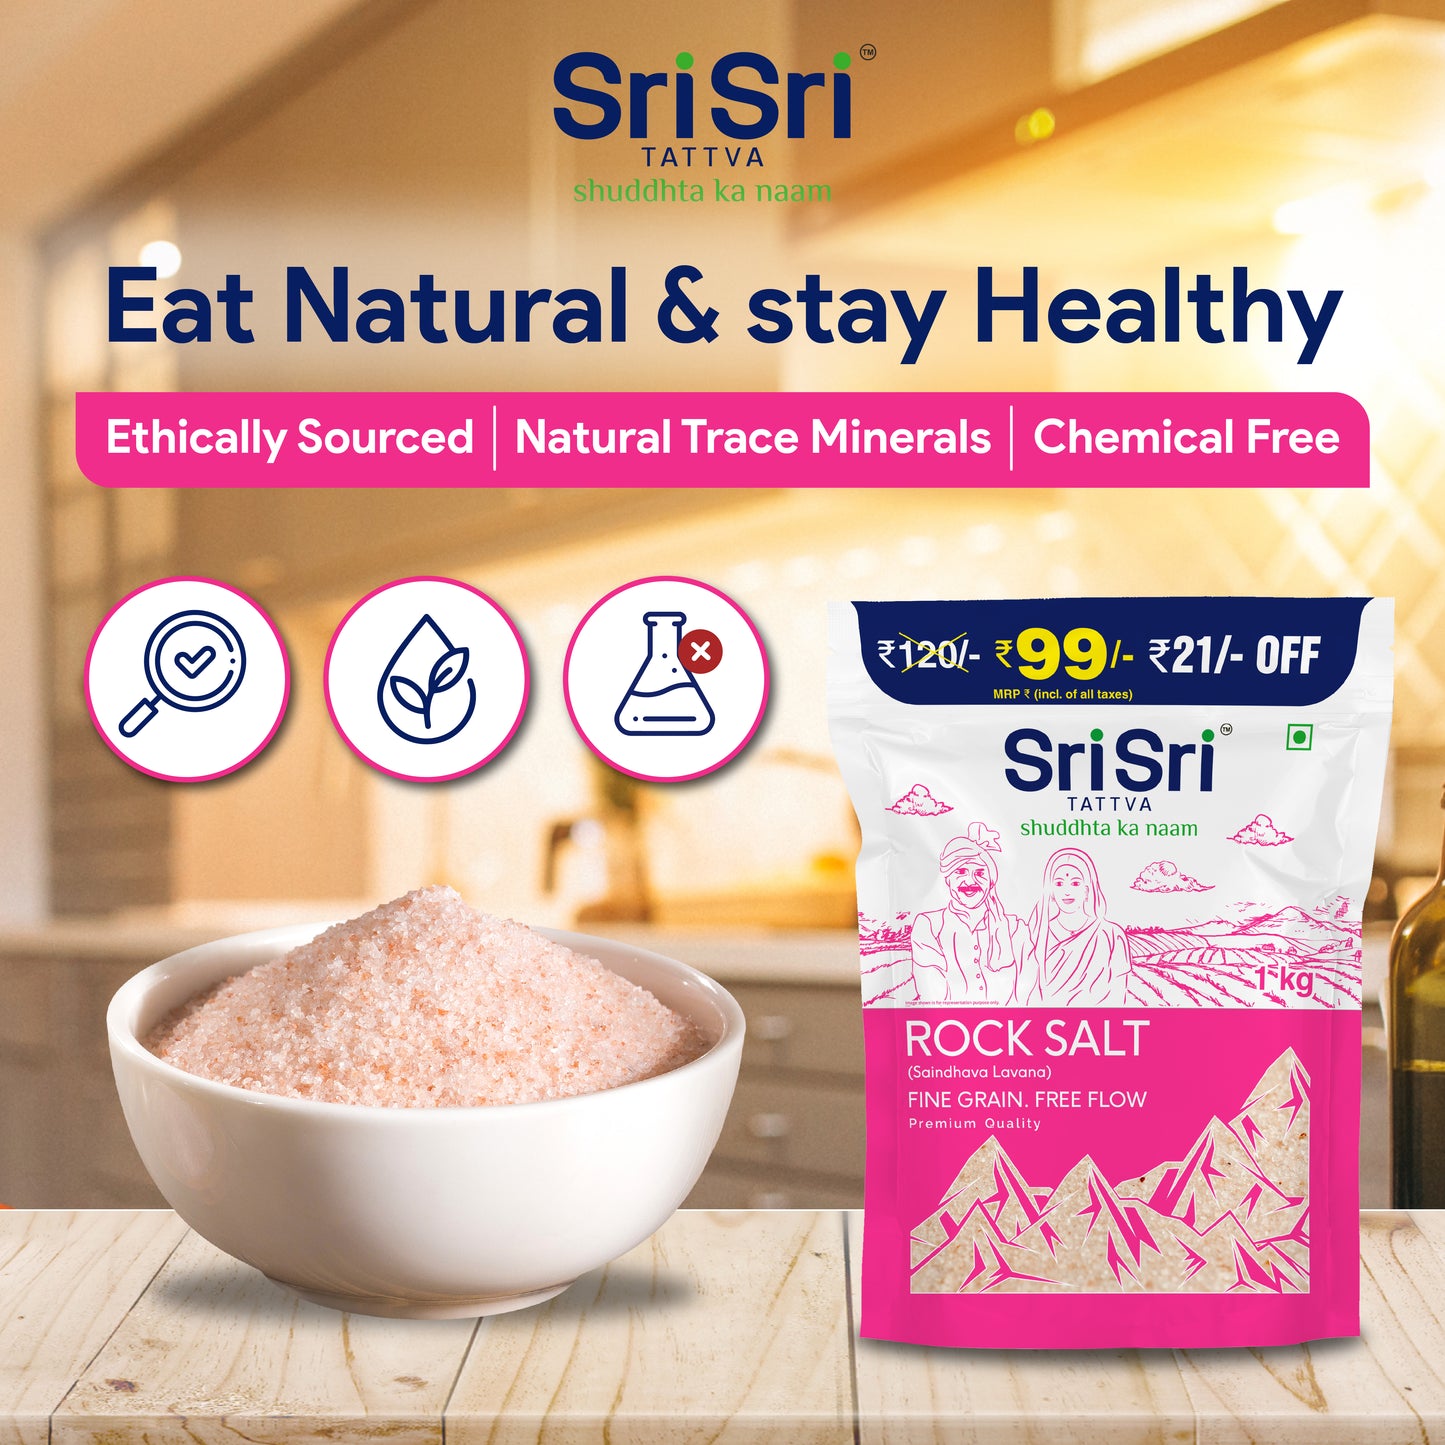 Rock Salt (Saindhava Lavana) - Fine Grain, Free Flow, Premium Quality - 1 kg